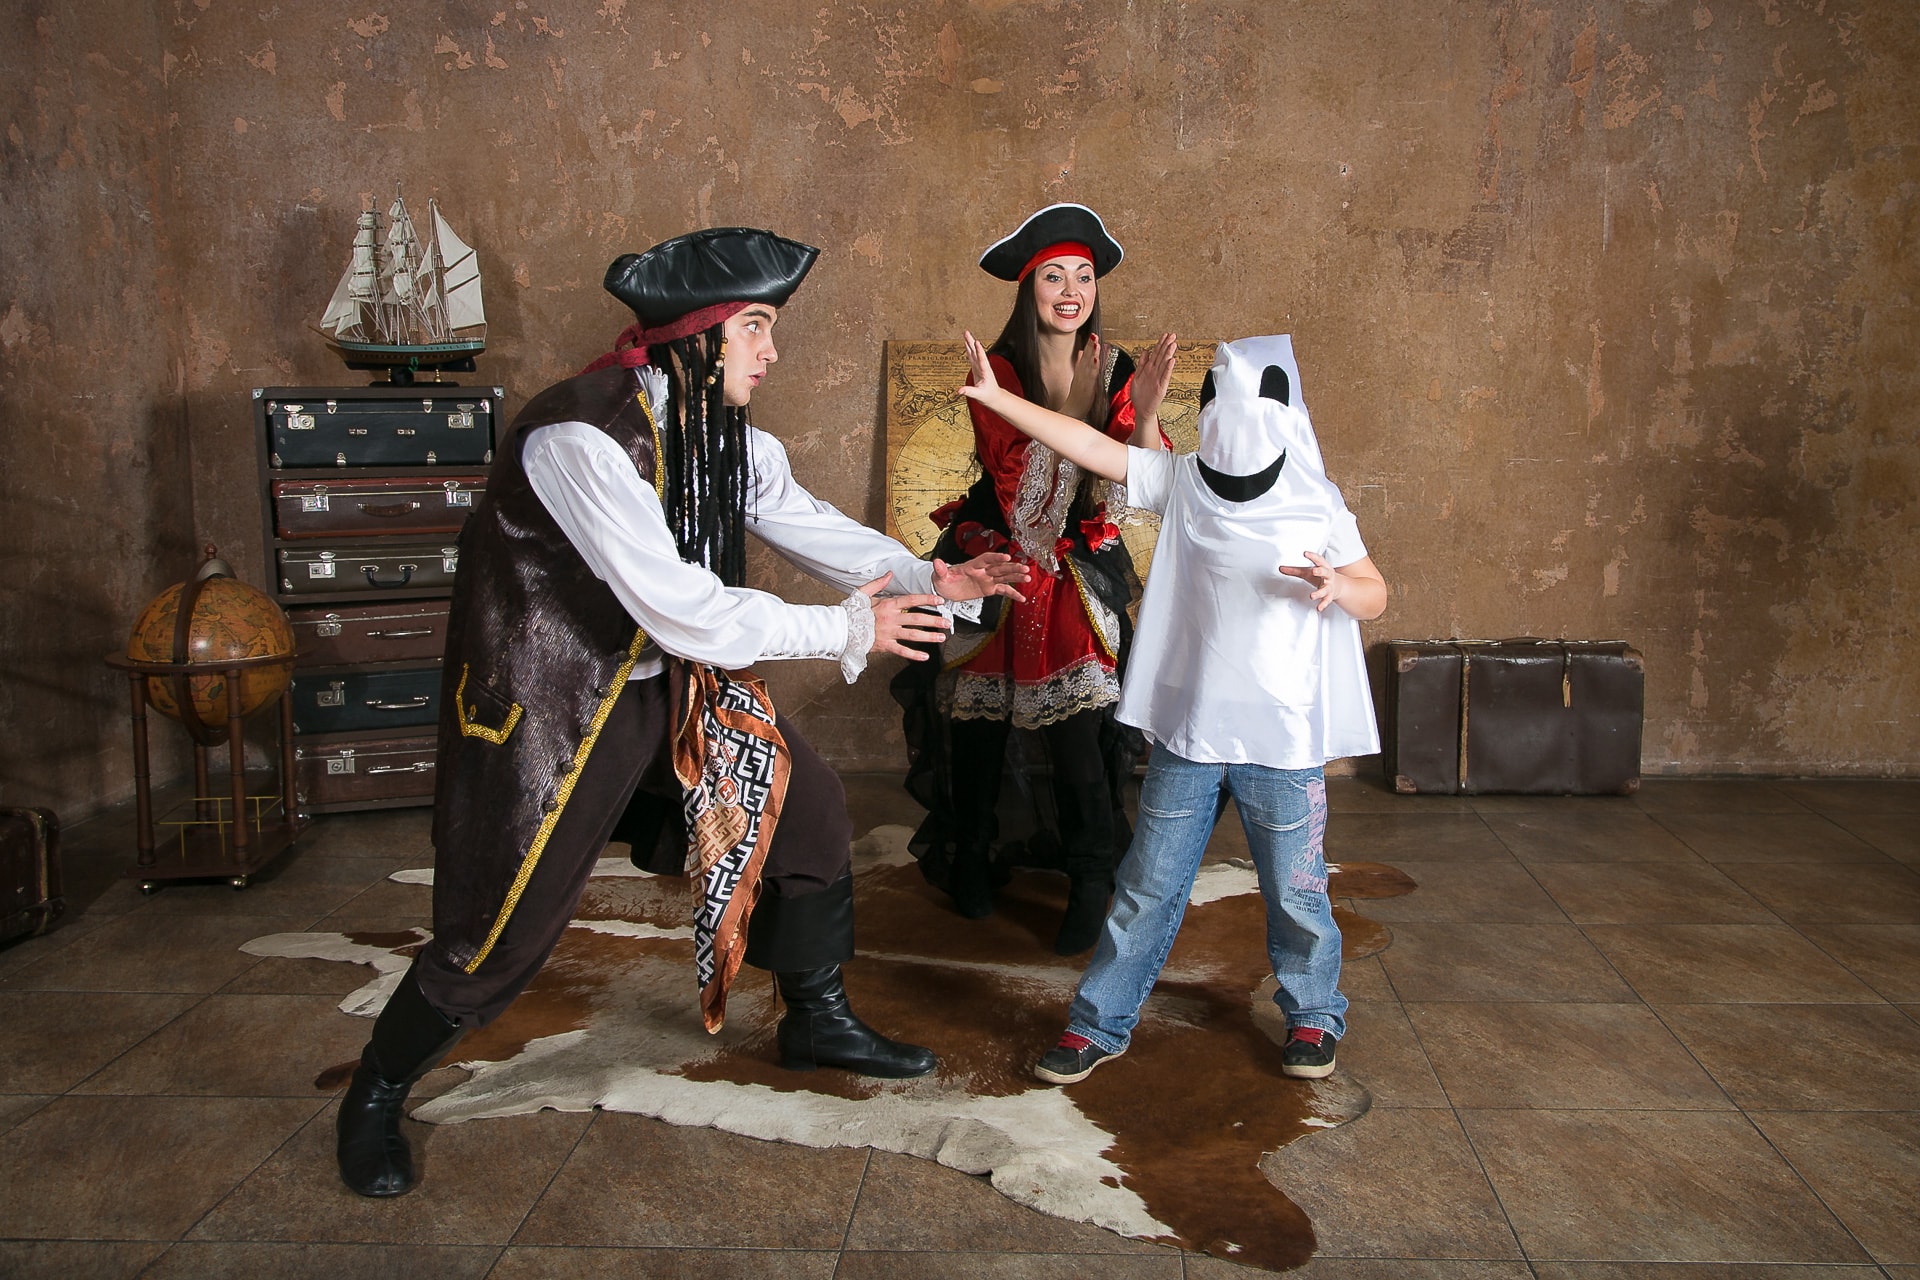 Пиратское счастье - музыка - рок